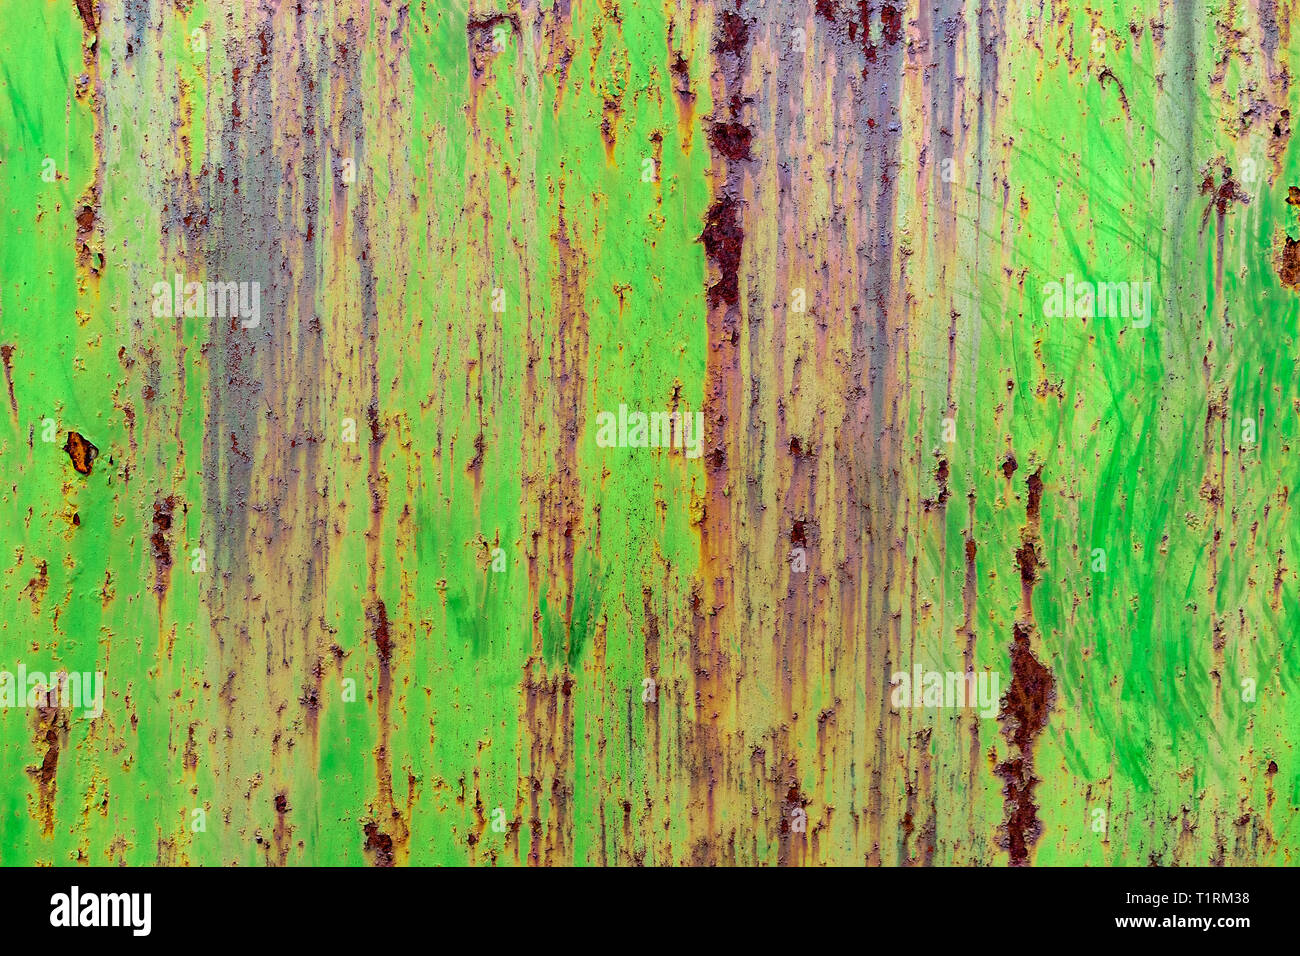 Dettaglio del dipinto di verde, vecchio, metallo arrugginito porte. Grunge texture di metallo arrugginito con graffi Foto Stock